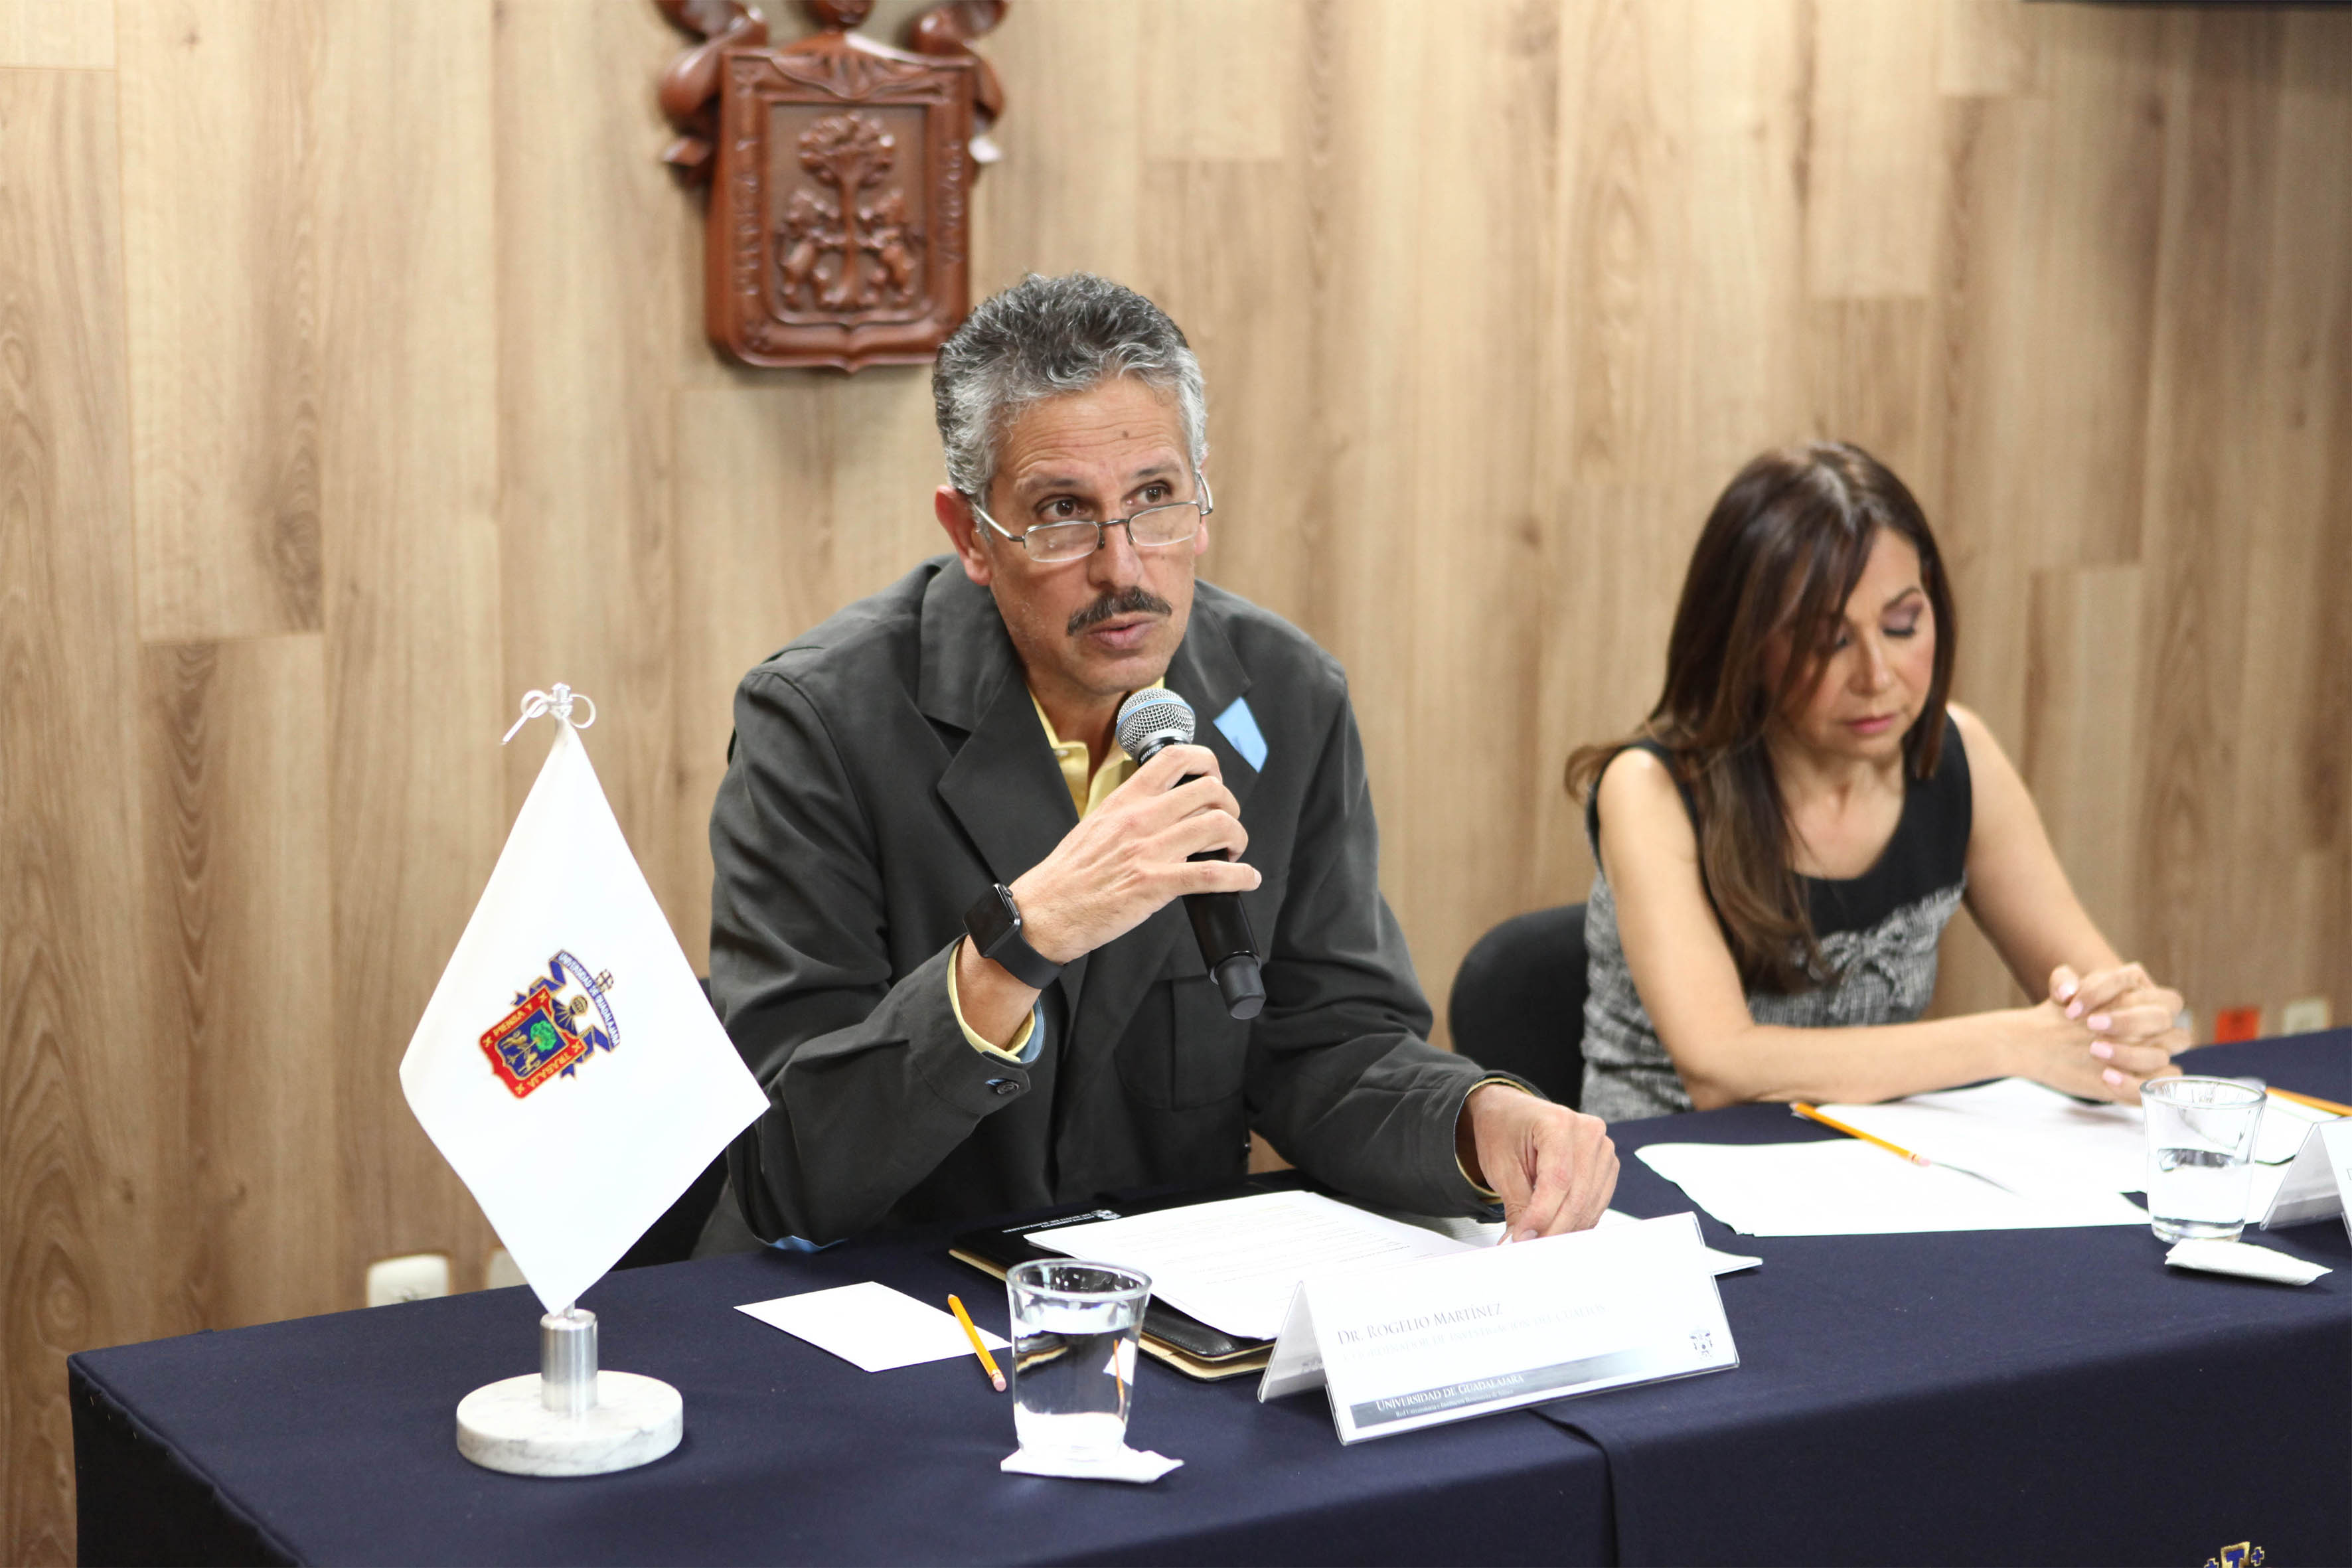 Dr. Rogelio Martínez, coordinador de investigación de CUALTOS, con micrófono en mano, haciendo uso de la palabra.